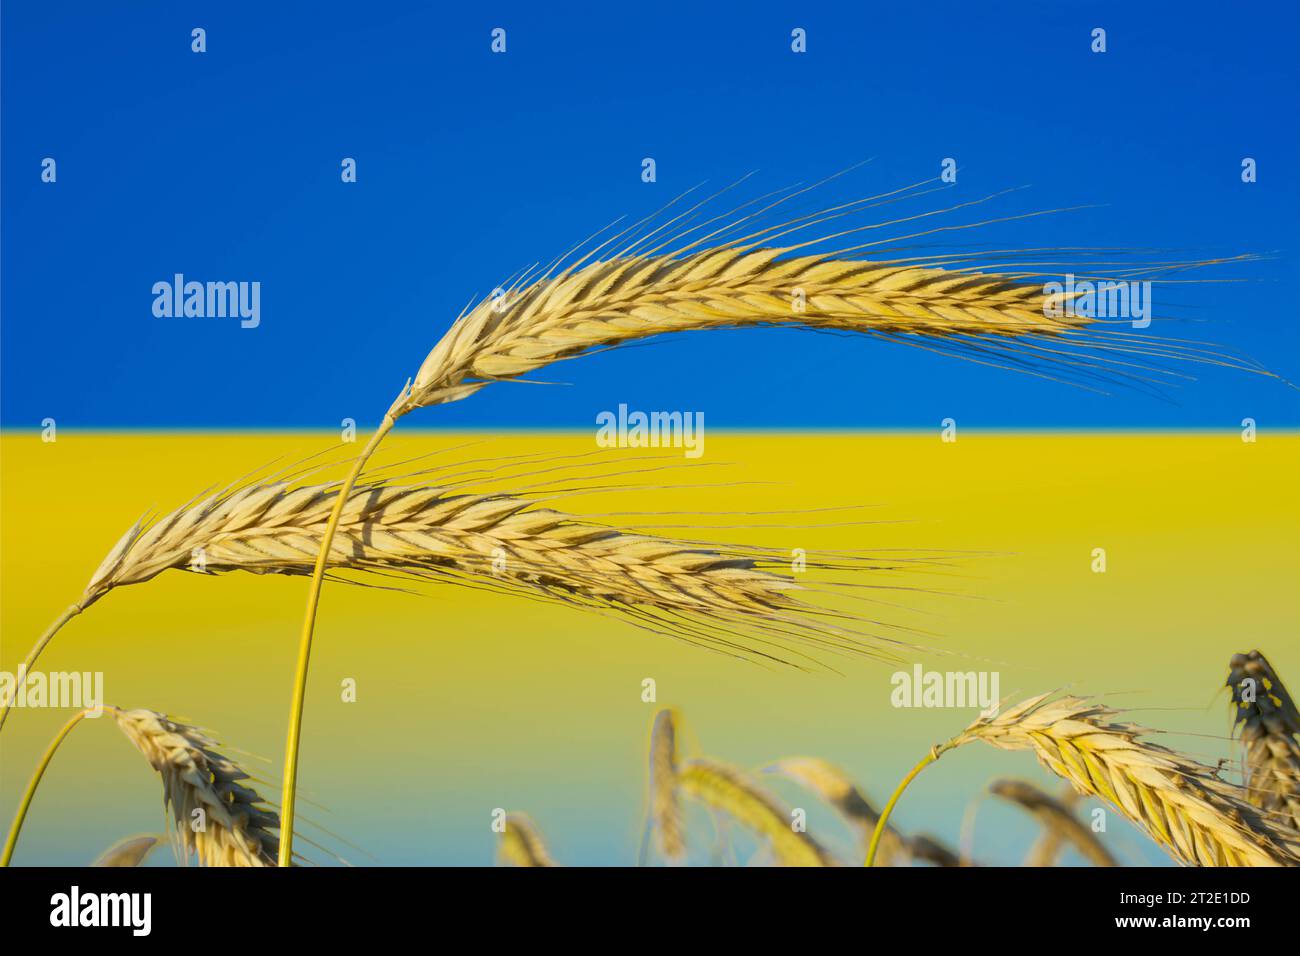 Ukraine: Die Kornkammer Europas Symbolbild zum Thema Getreideproduktion, Landwirtschaft, Ernährungssicherheit in der Ukraine *** Ukraine die Kornkammer Europas Symbolbild zum Thema Getreideproduktion, Landwirtschaft, Ernährungssicherheit in der Ukraine. Stockfoto